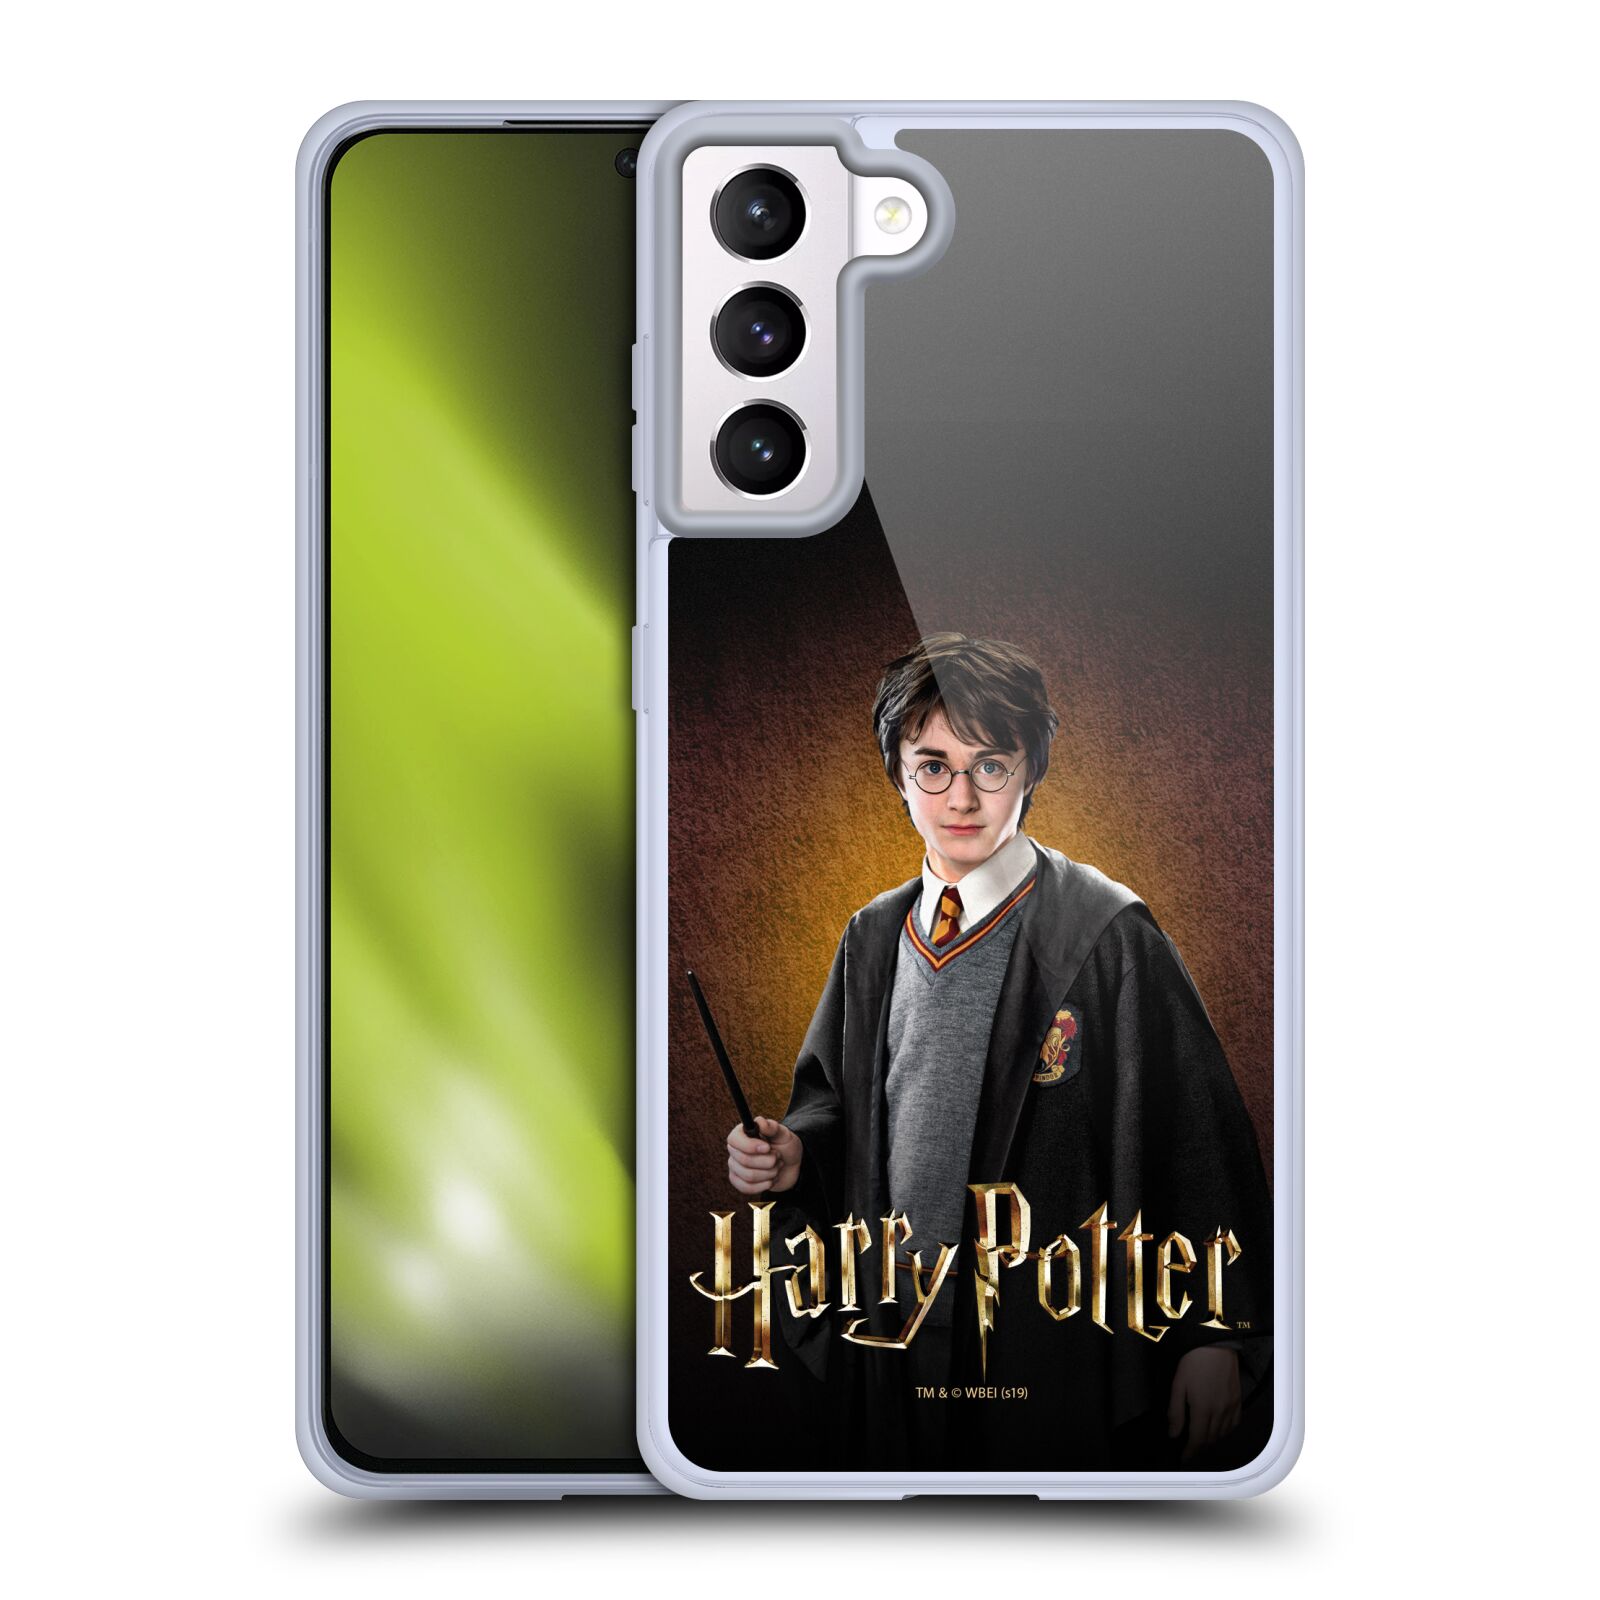 Silikonové pouzdro na mobil Samsung Galaxy S21 5G - Harry Potter - Malý Harry Potter (Silikonový kryt, obal, pouzdro na mobilní telefon Samsung Galaxy S21 5G G991B s licencovaným motivem Harry Potter - Malý Harry Potter)